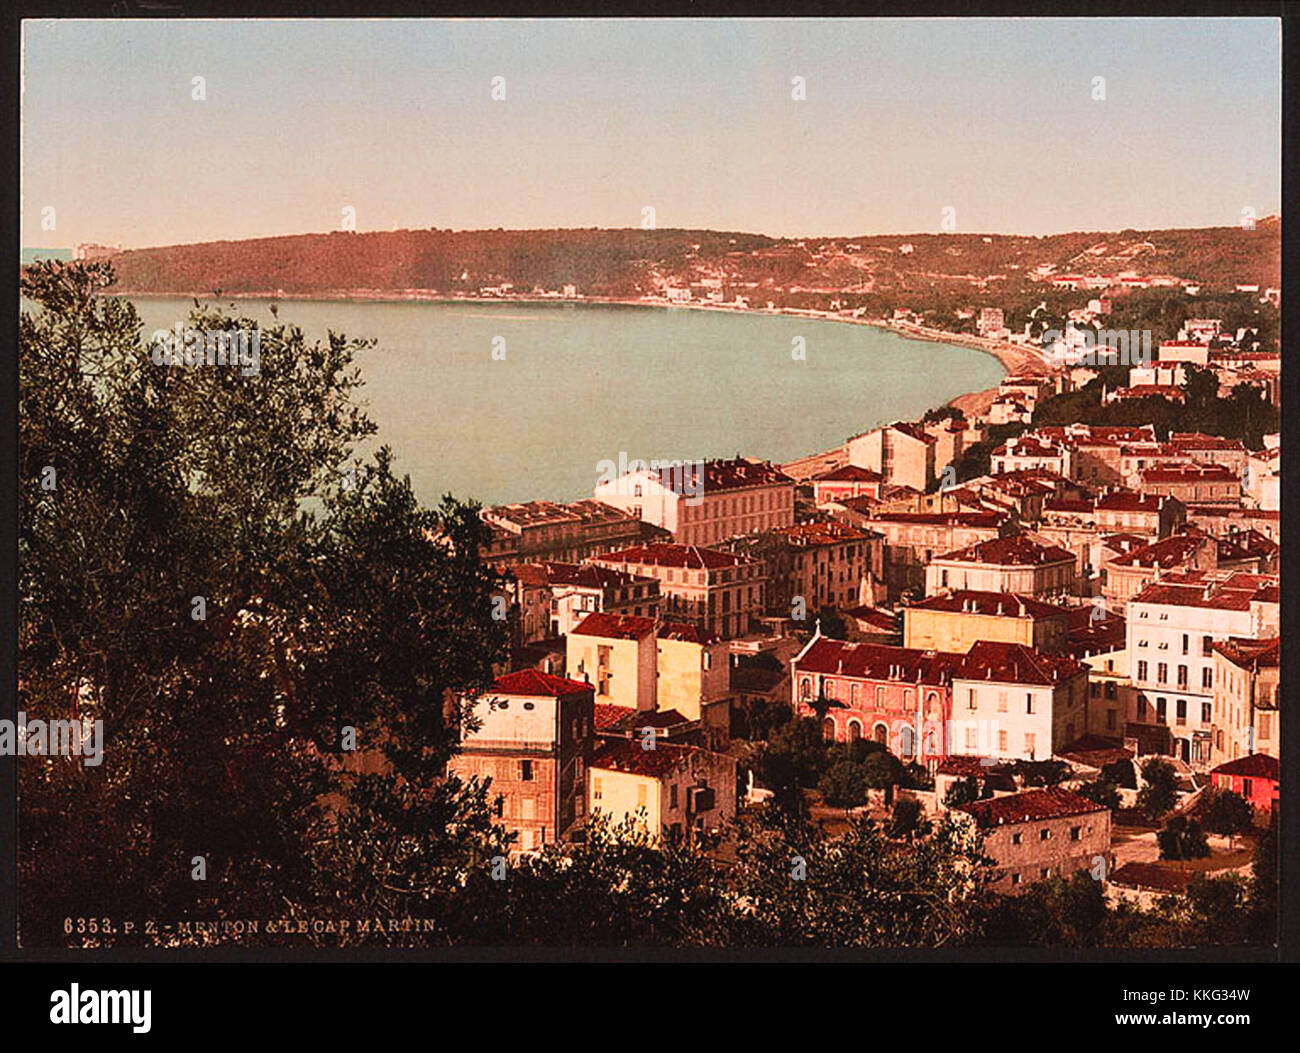 Vintage historischen Foto von einer Stadt in der Nähe von einem See oder am Meer Stockfoto